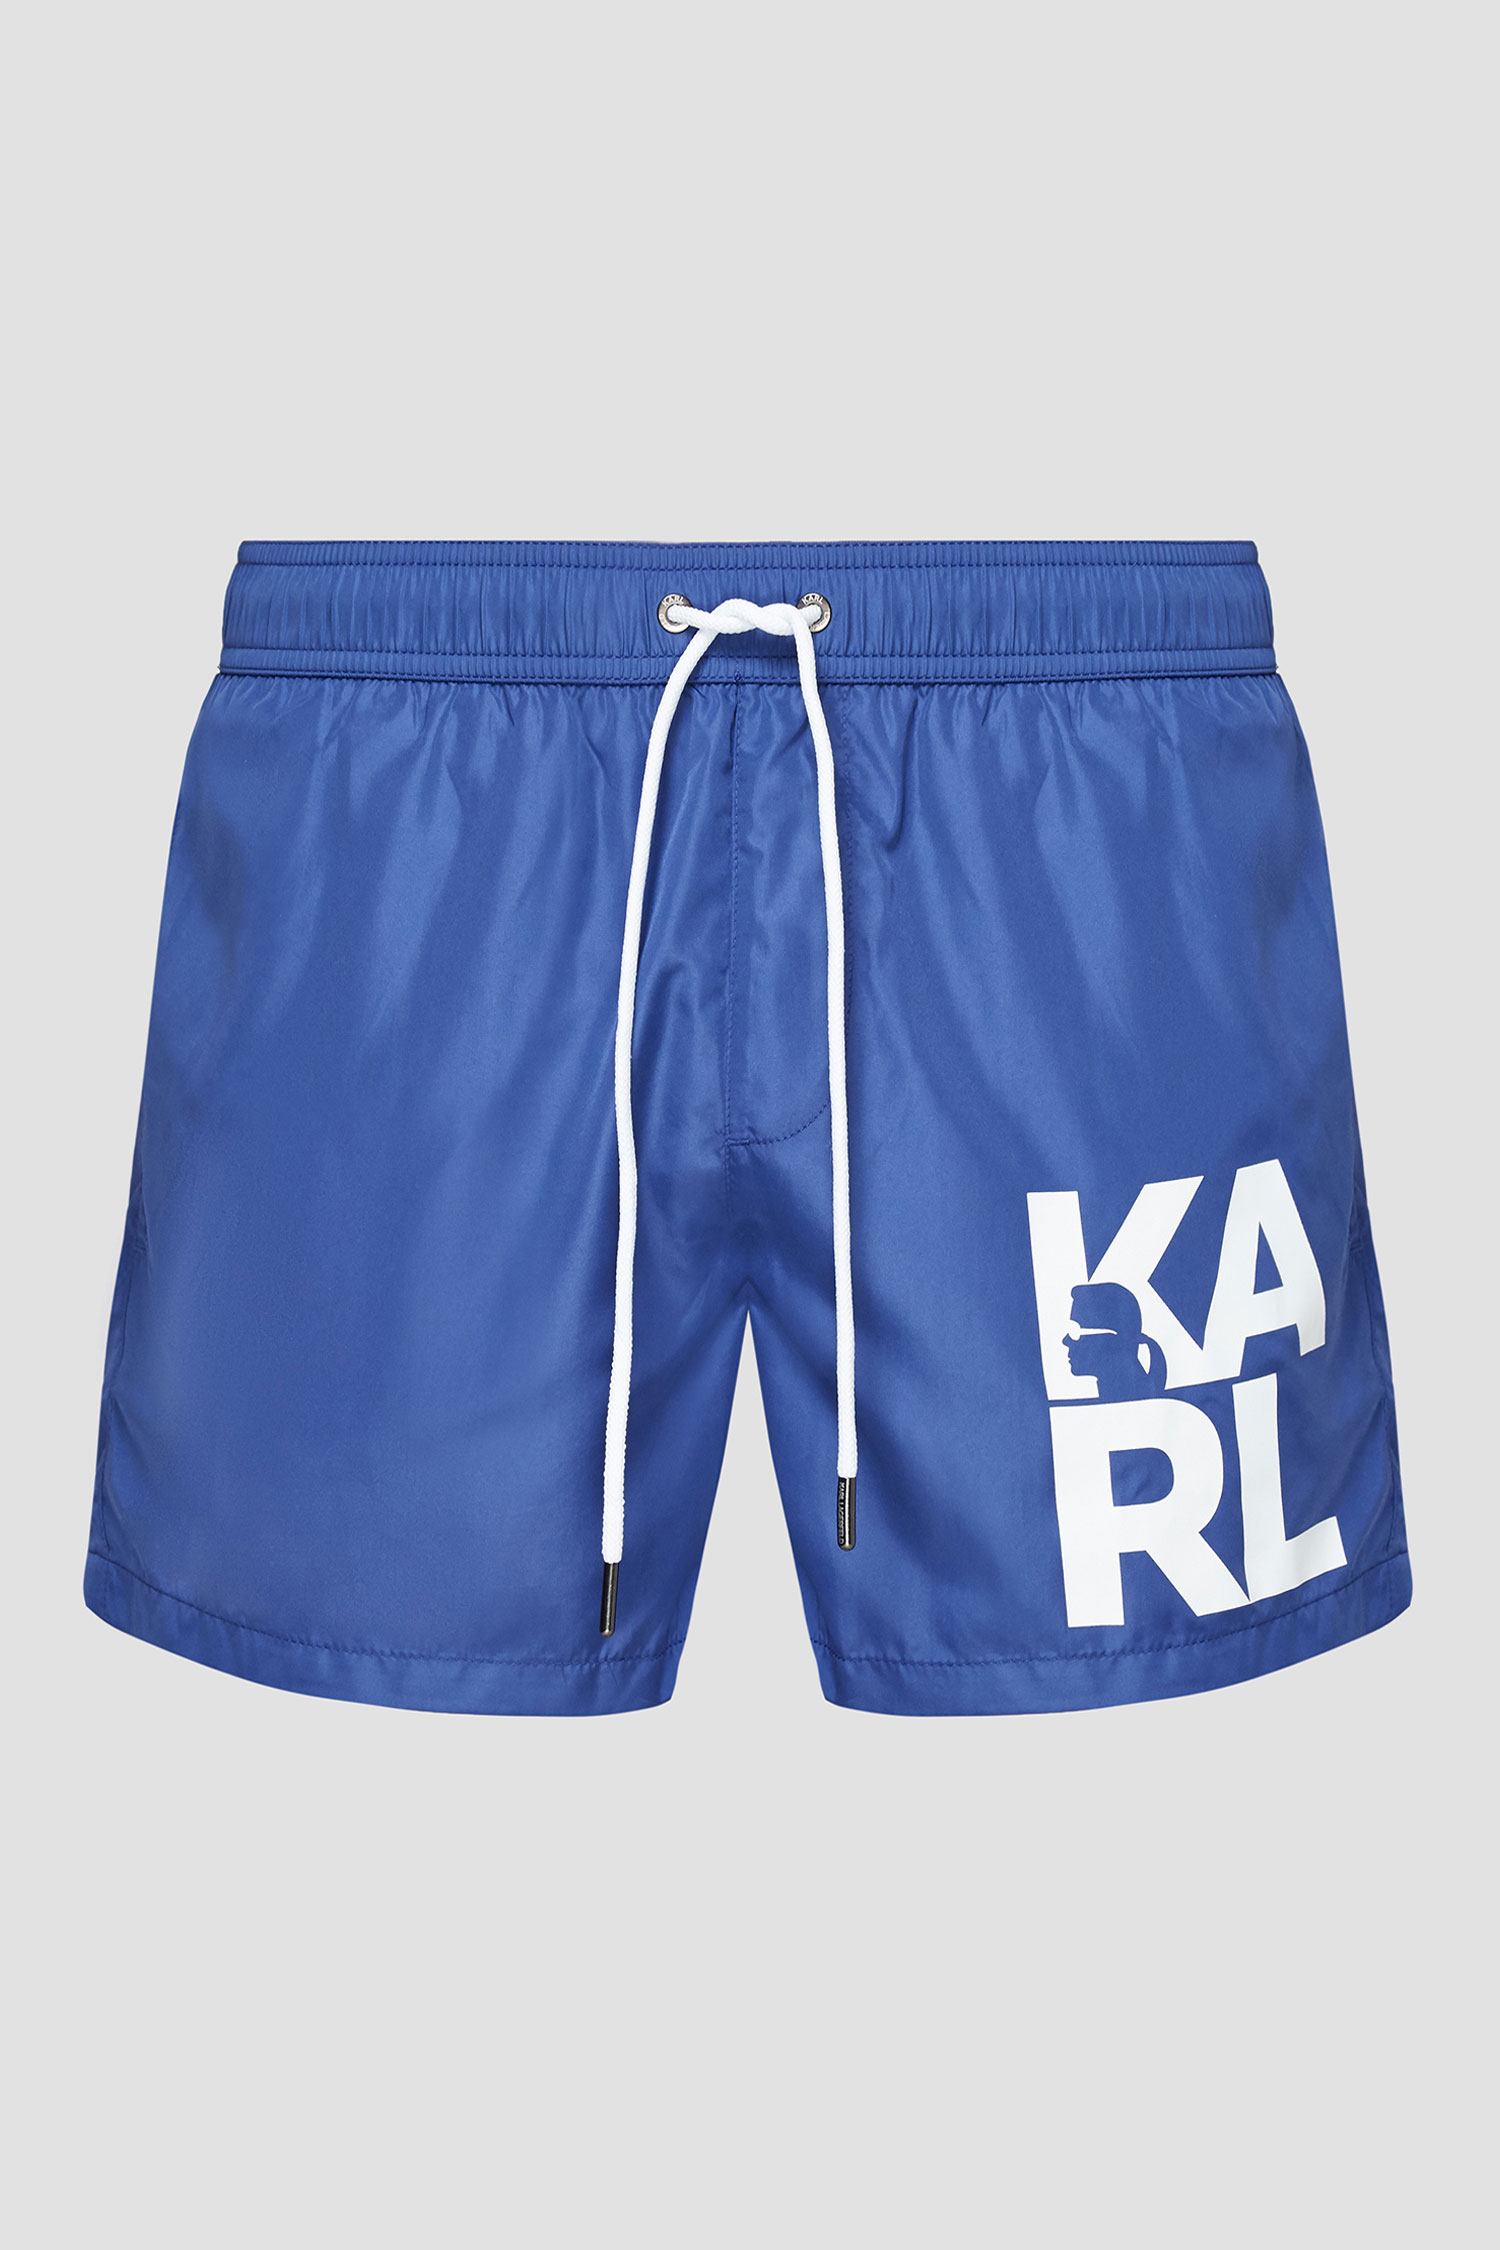 Мужские синие плавательные шорты Karl Lagerfeld KL21MBS02;NAVY